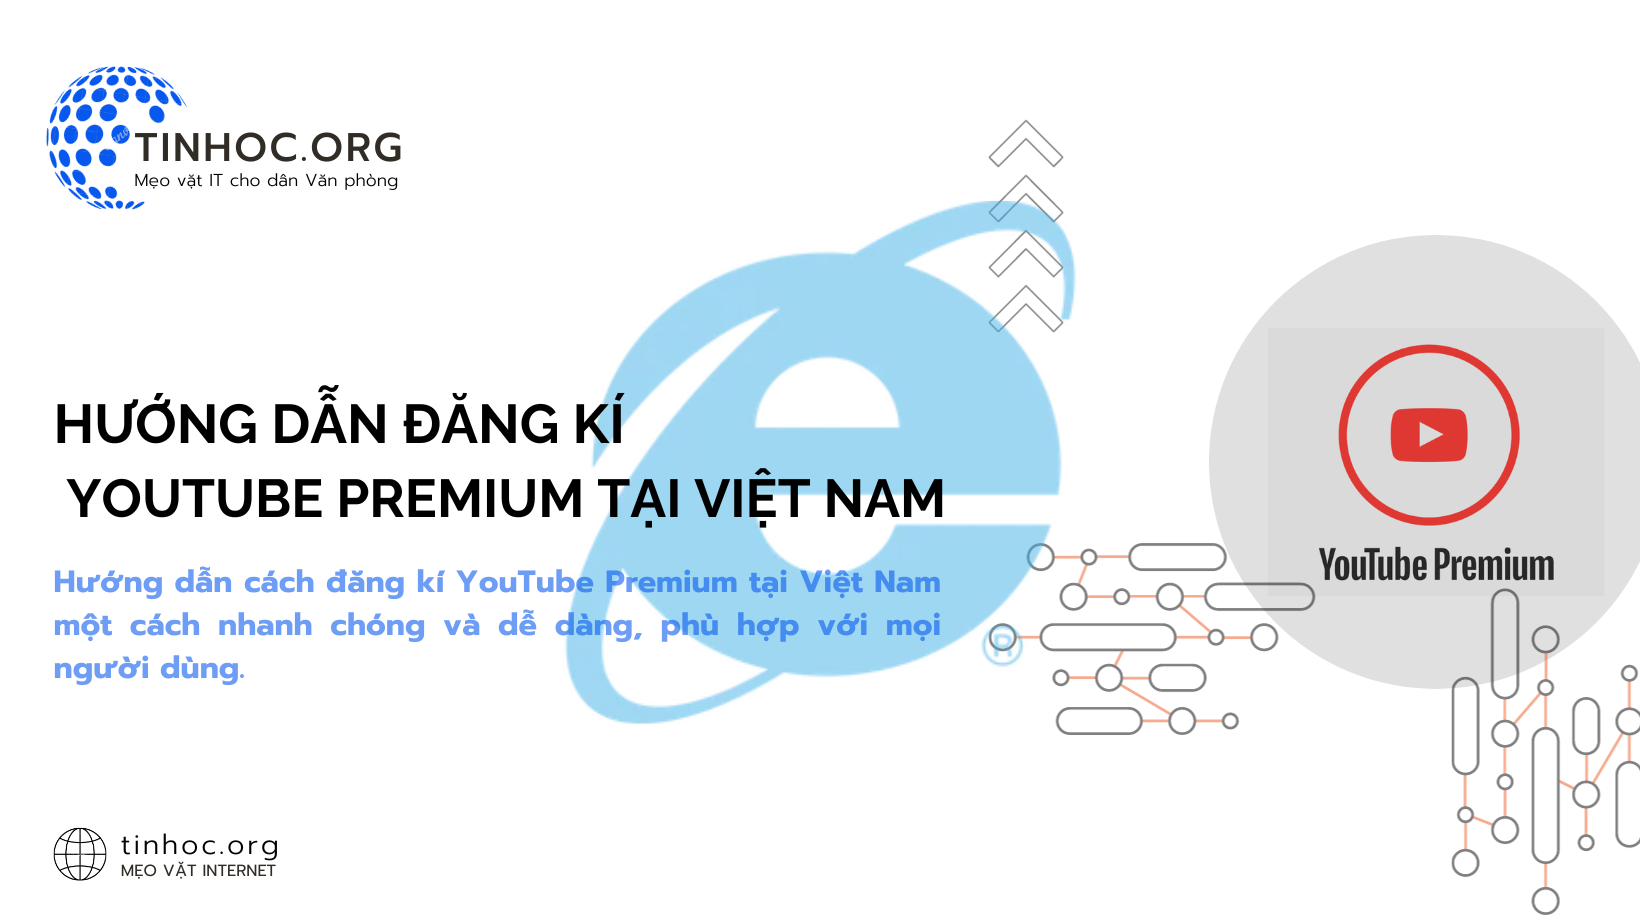 Hướng dẫn cách đăng kí YouTube Premium tại Việt Nam một cách nhanh chóng và dễ dàng, phù hợp với mọi người dùng.